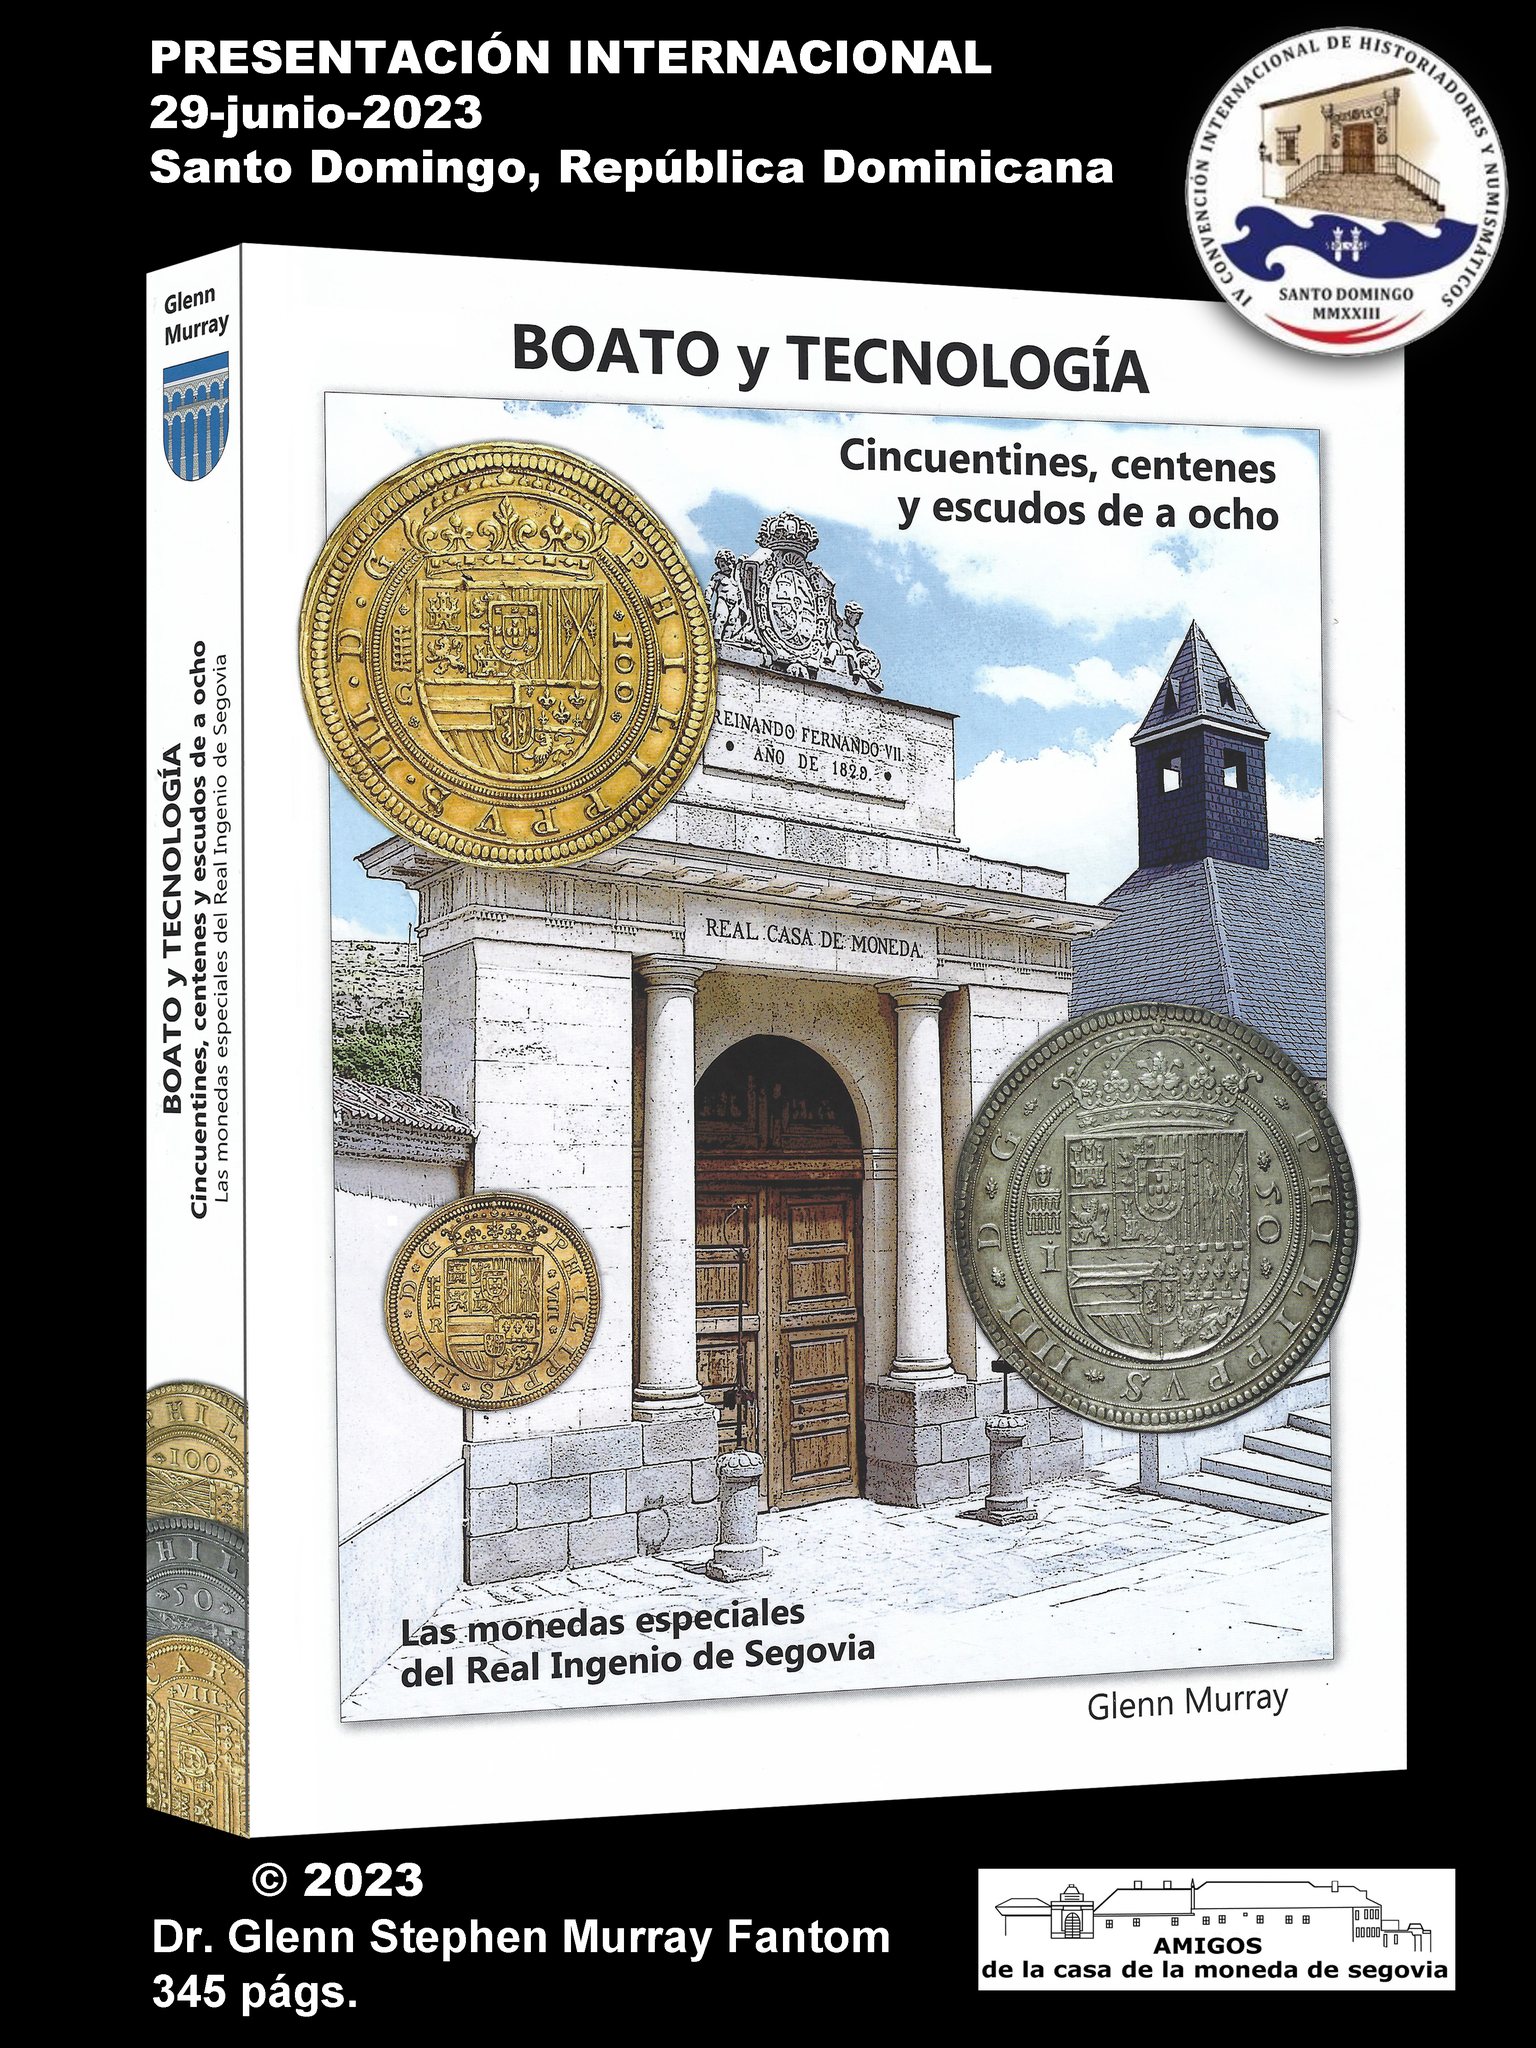 NEW BOOK: “Boato y tecnología, cincuentines, centenes y escudos de a ocho. Las monedas especiales del Real Ingenio de Segovia”.